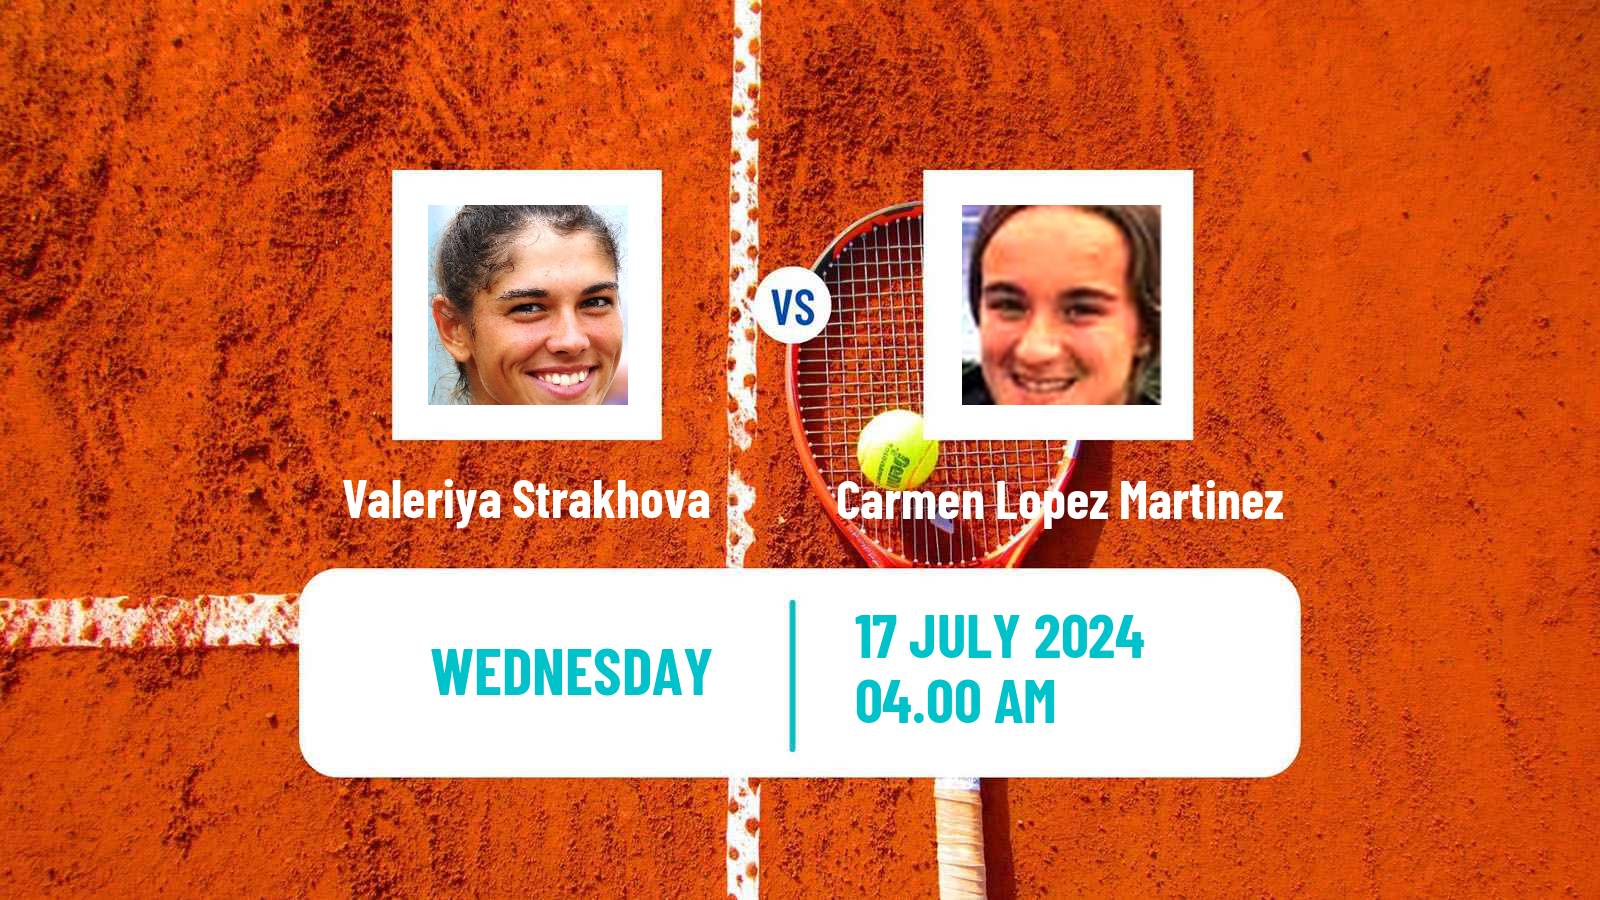 Tennis ITF W100 Vitoria Gasteiz Women Valeriya Strakhova - Carmen Lopez Martinez